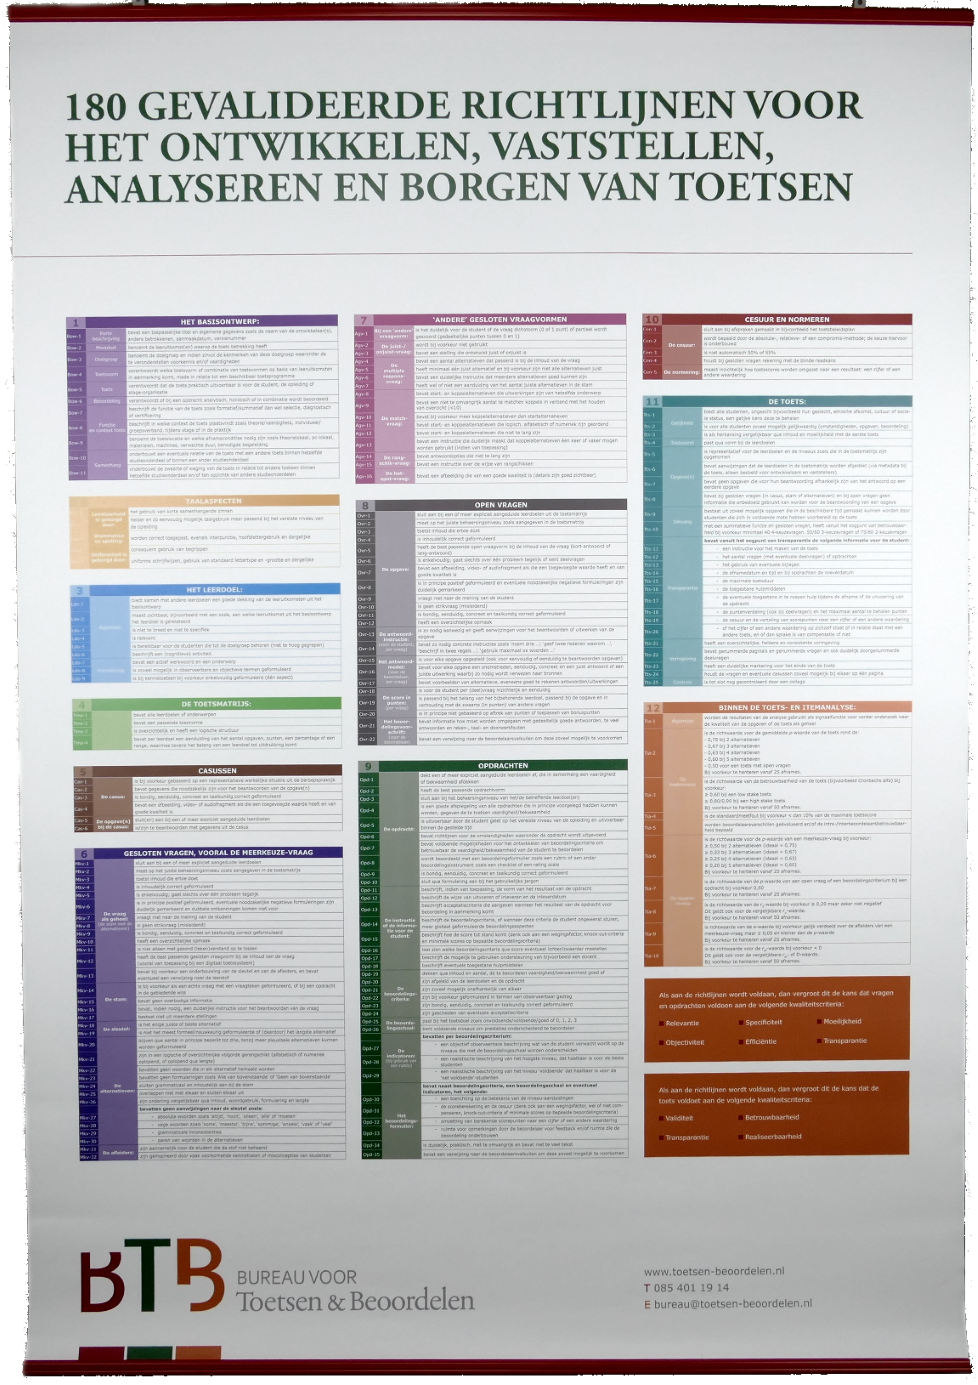 A0-poster met 180 gevalideerde richtlijnen voor toetsen